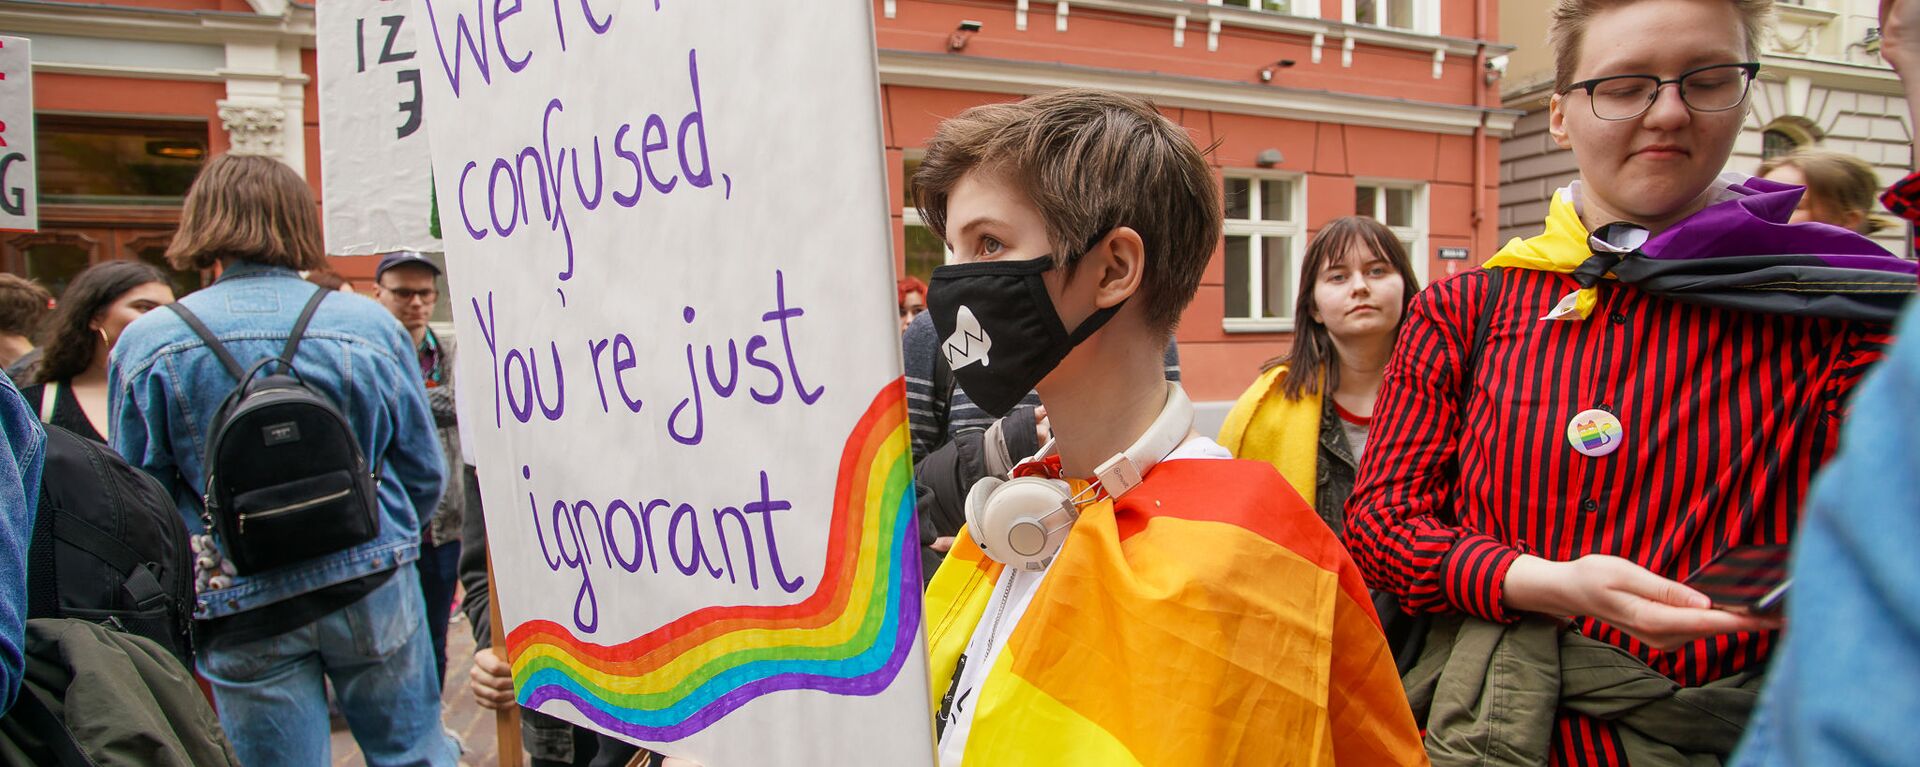  Пикет молодежной организации Протест за права представителей ЛГБТ - Sputnik Латвия, 1920, 13.04.2021